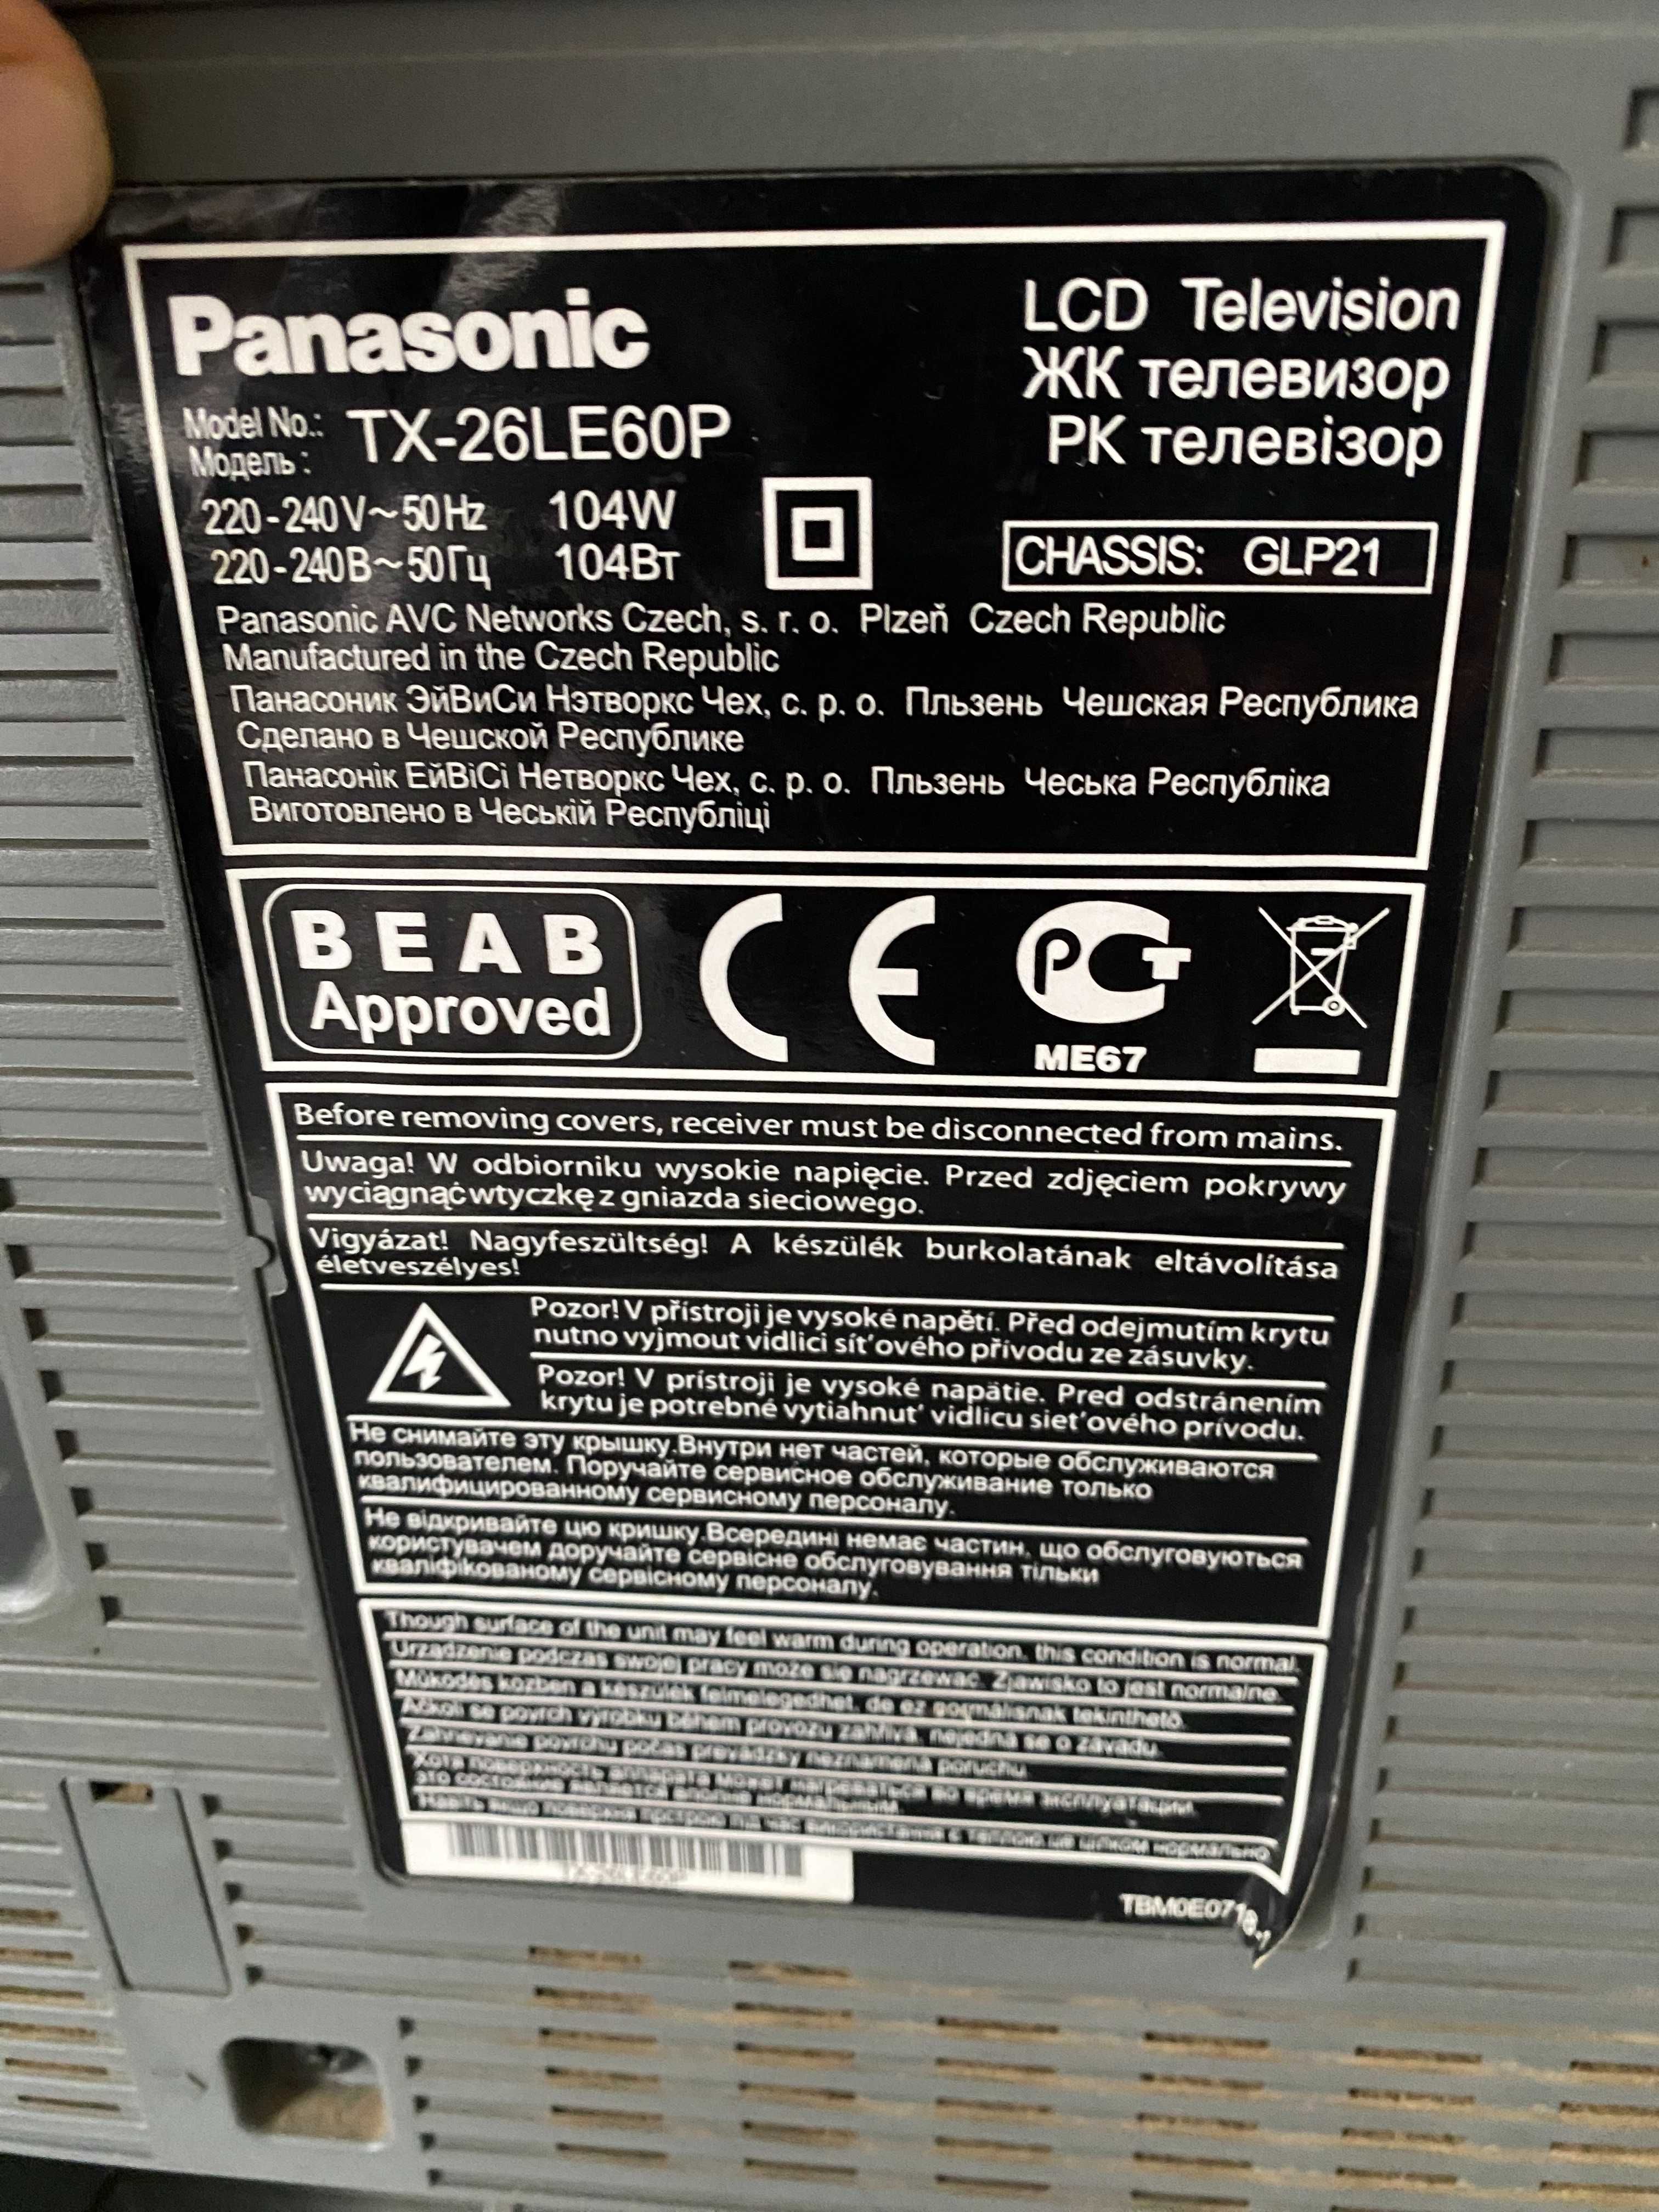 Telewizor Panasonic
TX-26LE60P